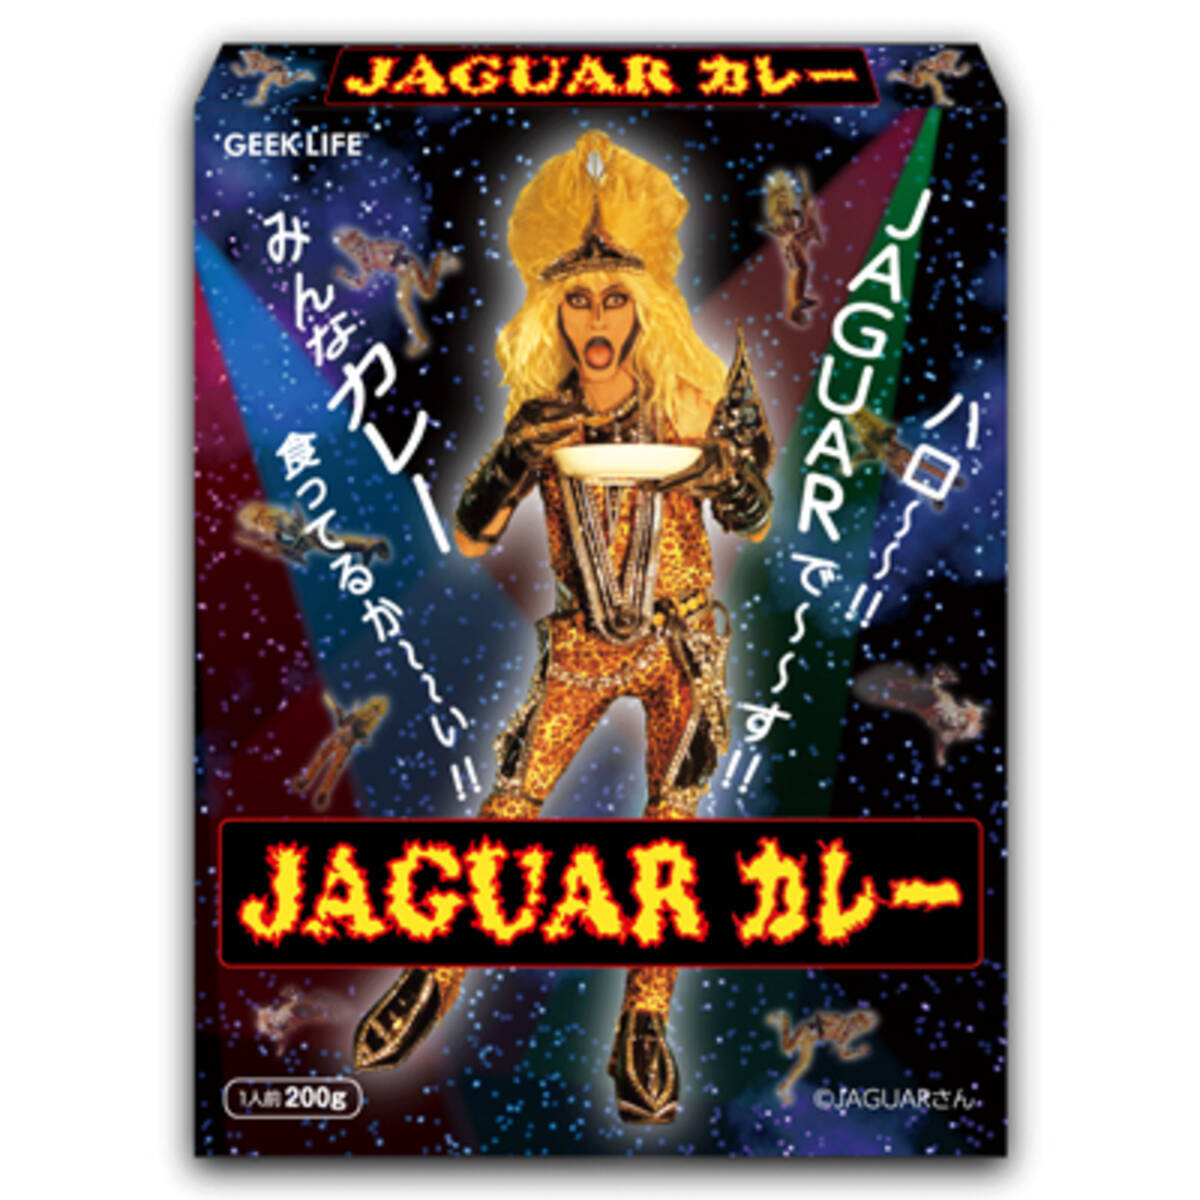 月曜から夜ふかし ジャガーさんの Jaguarカレー を食べてみた エキサイトニュース 2 3